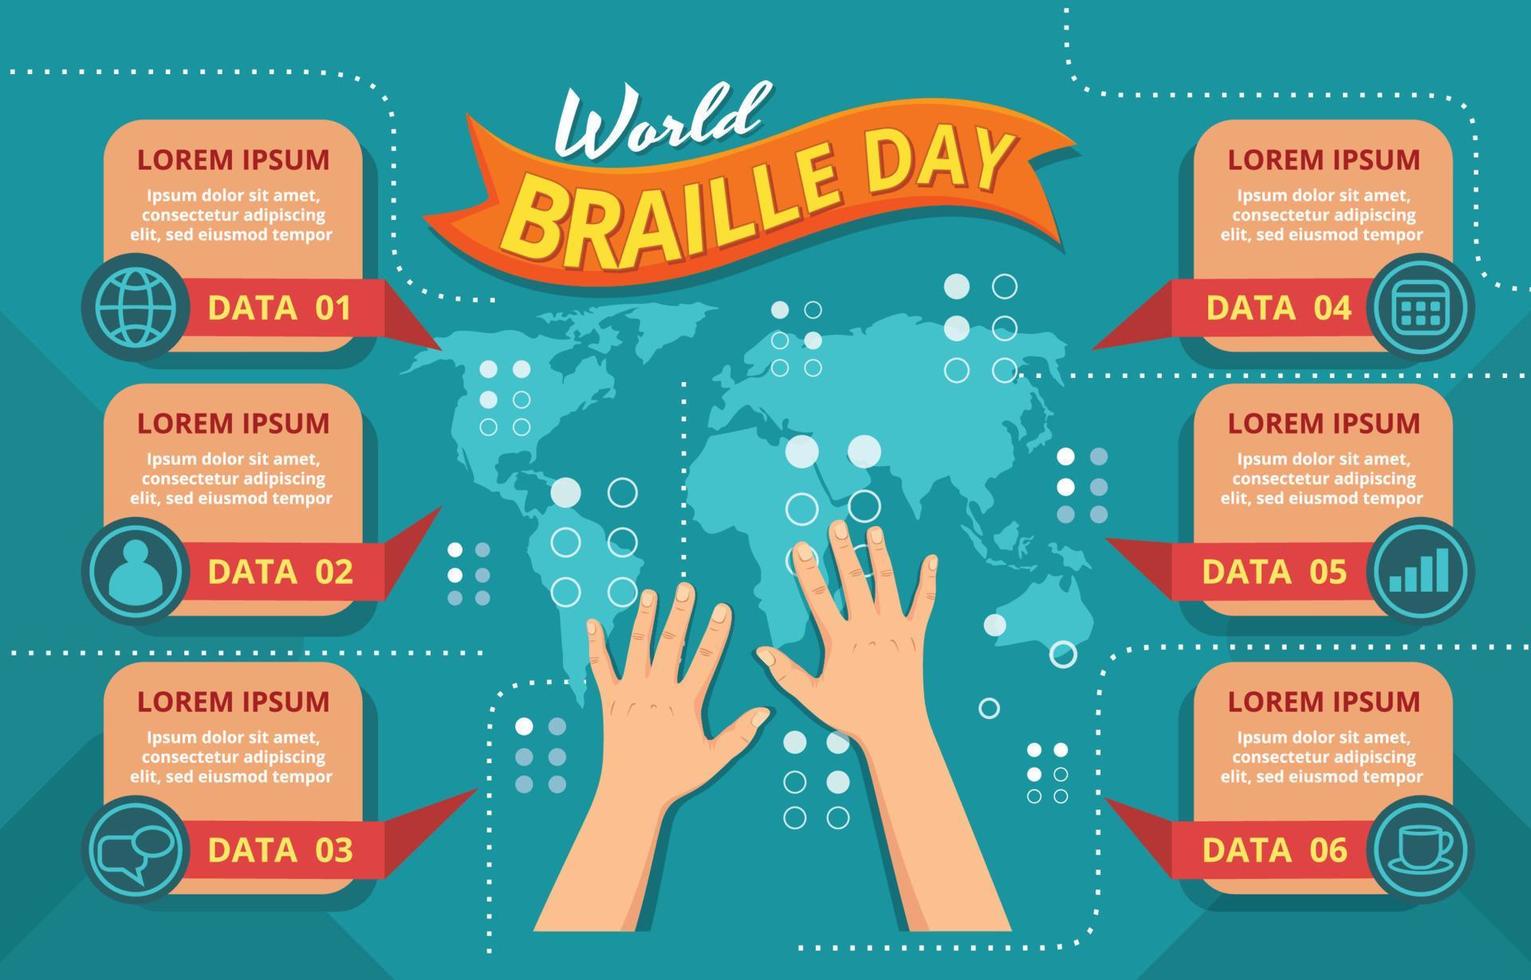 wereld braille dag infographic sjabloon vector